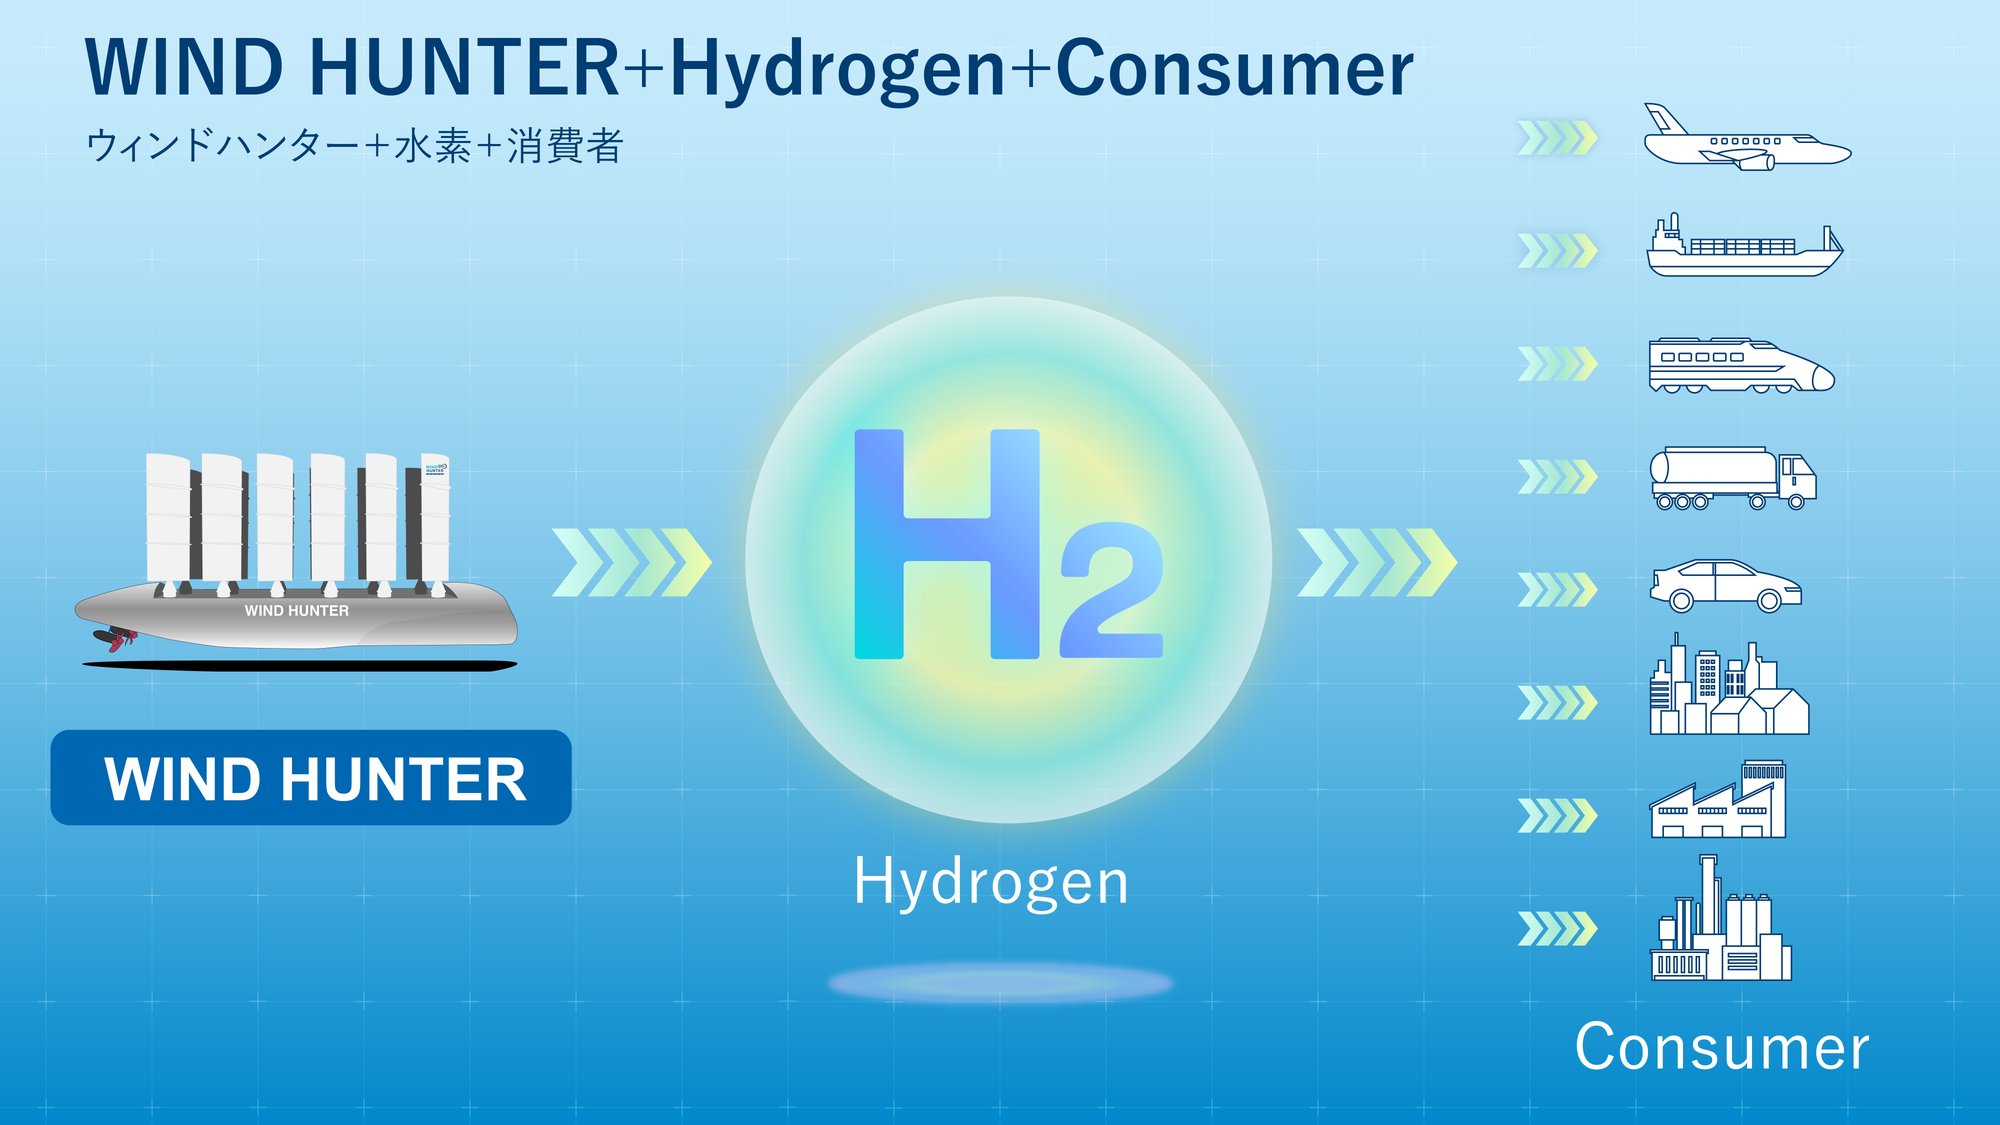 WIND HUNTER Hydrogen supply chain